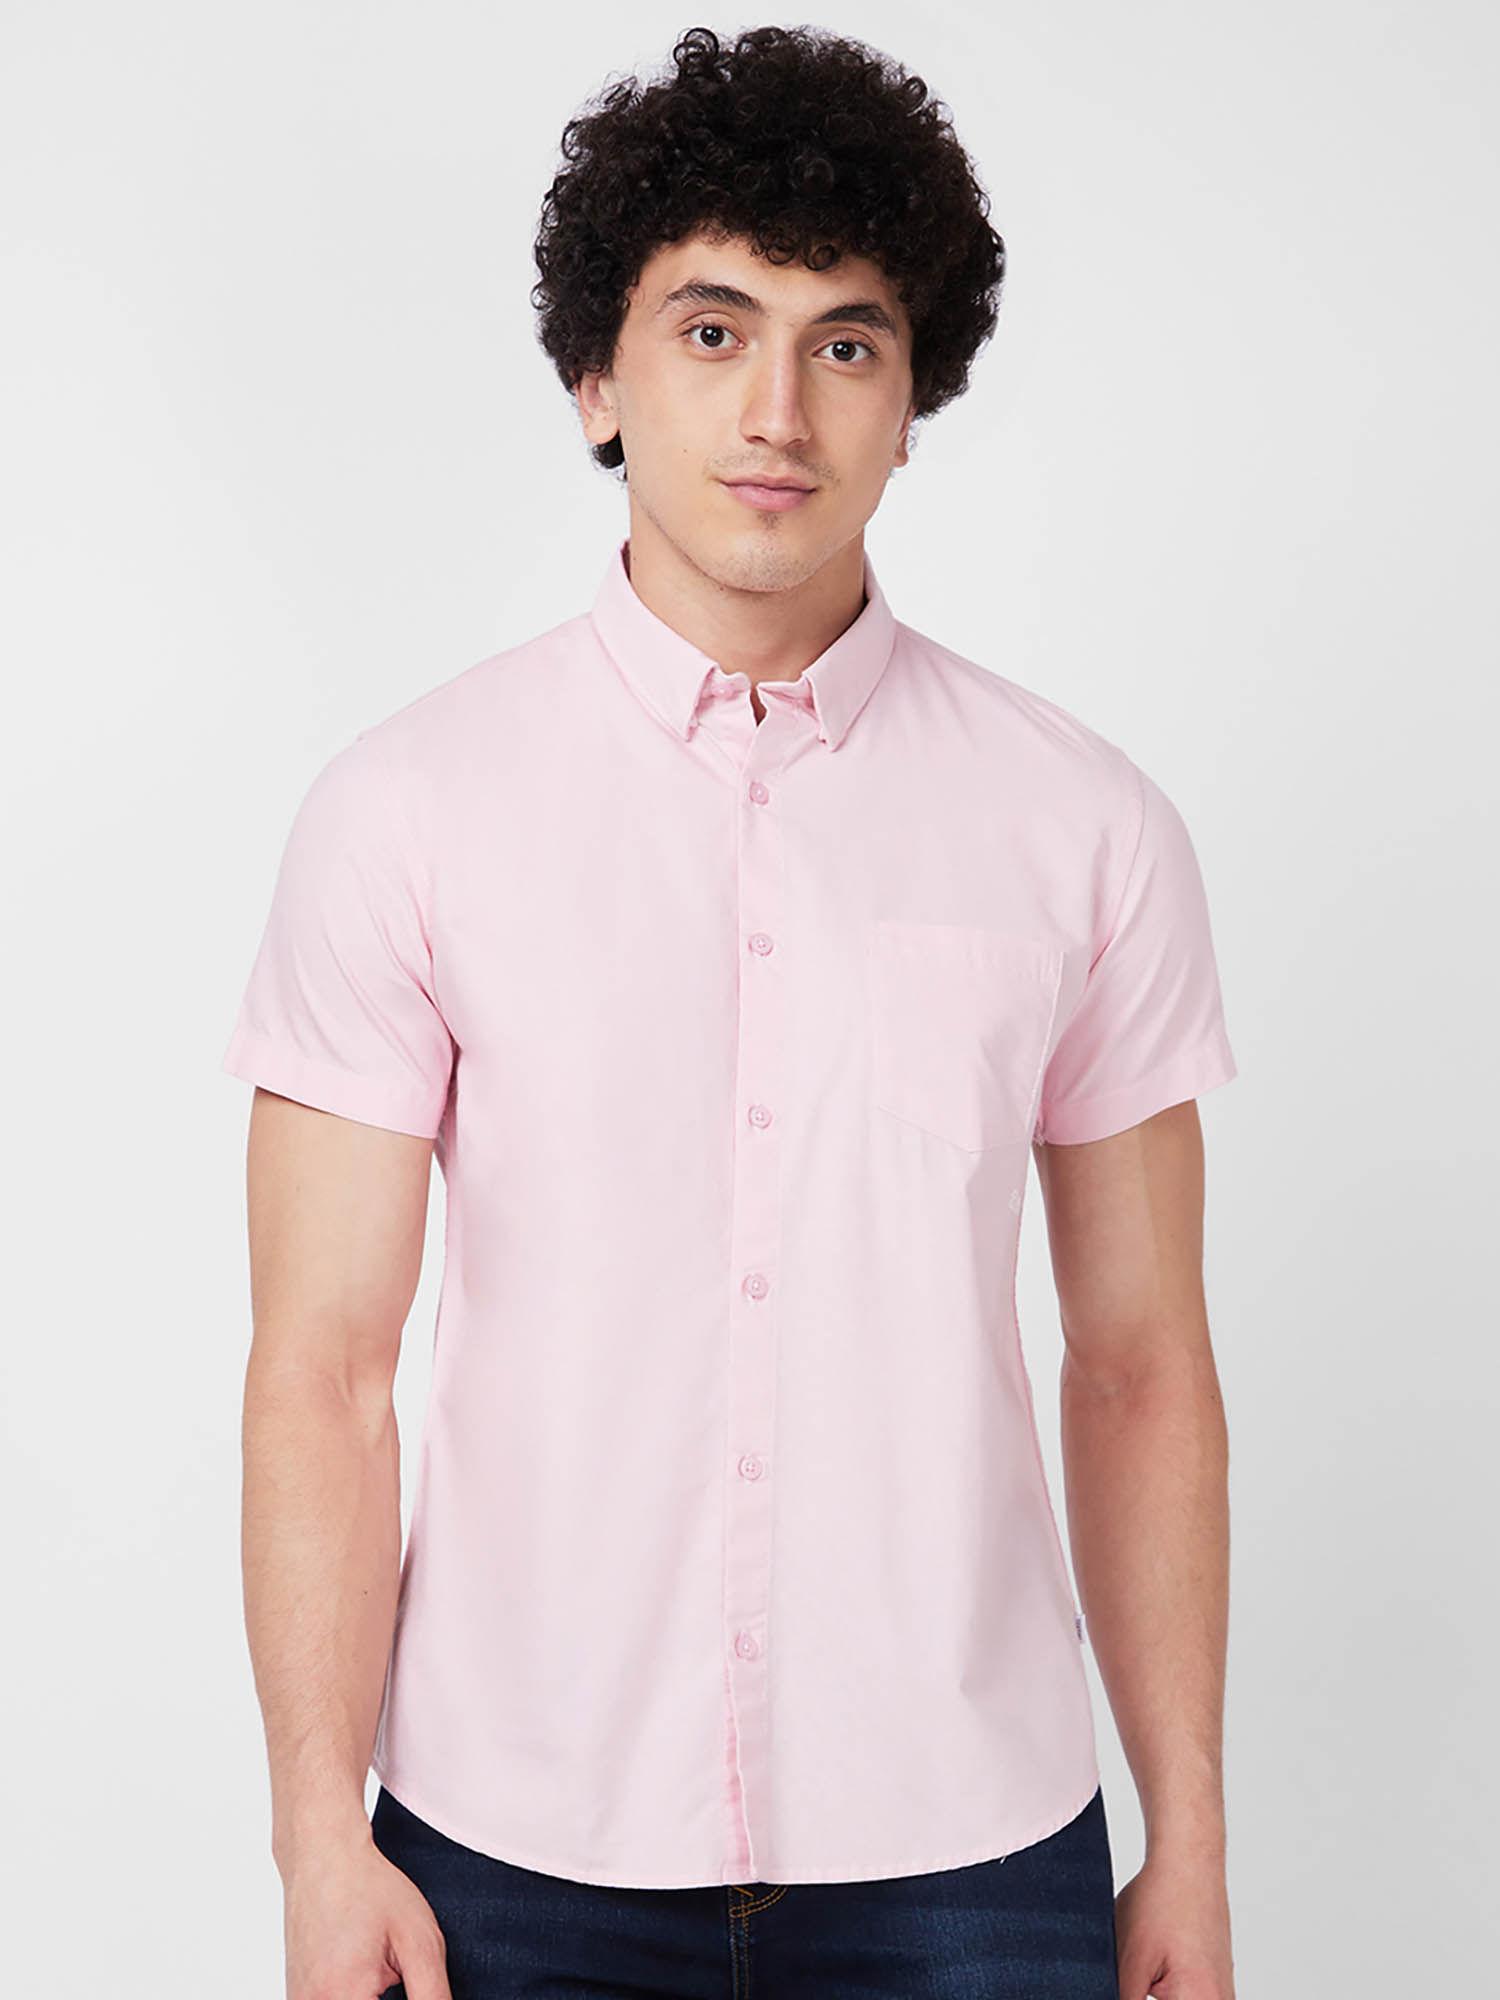 pink solid half sleeve shirt for men